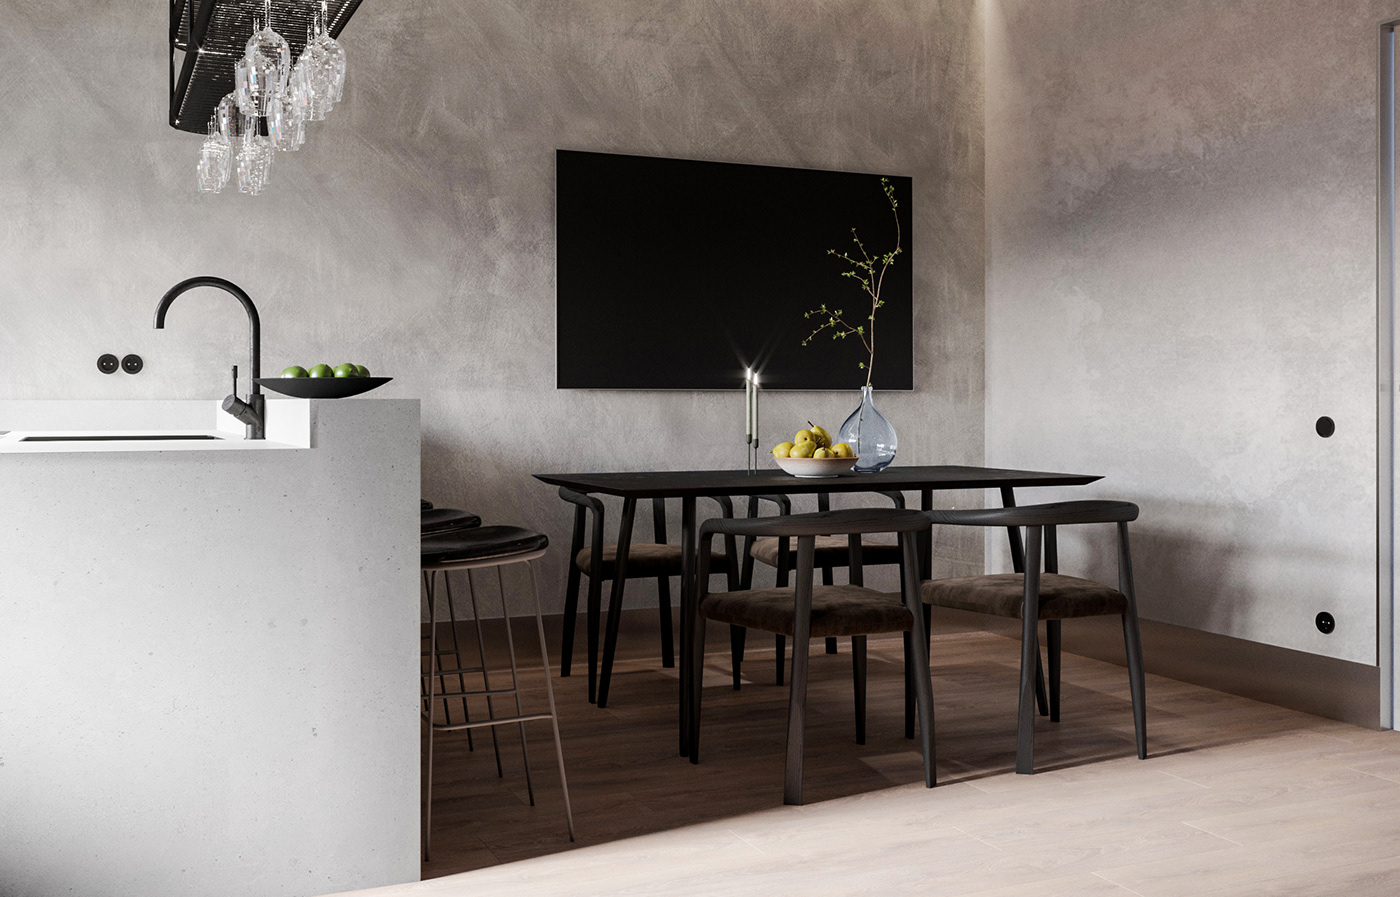 Modern Design kitchen minimalism binar design Interior architecture